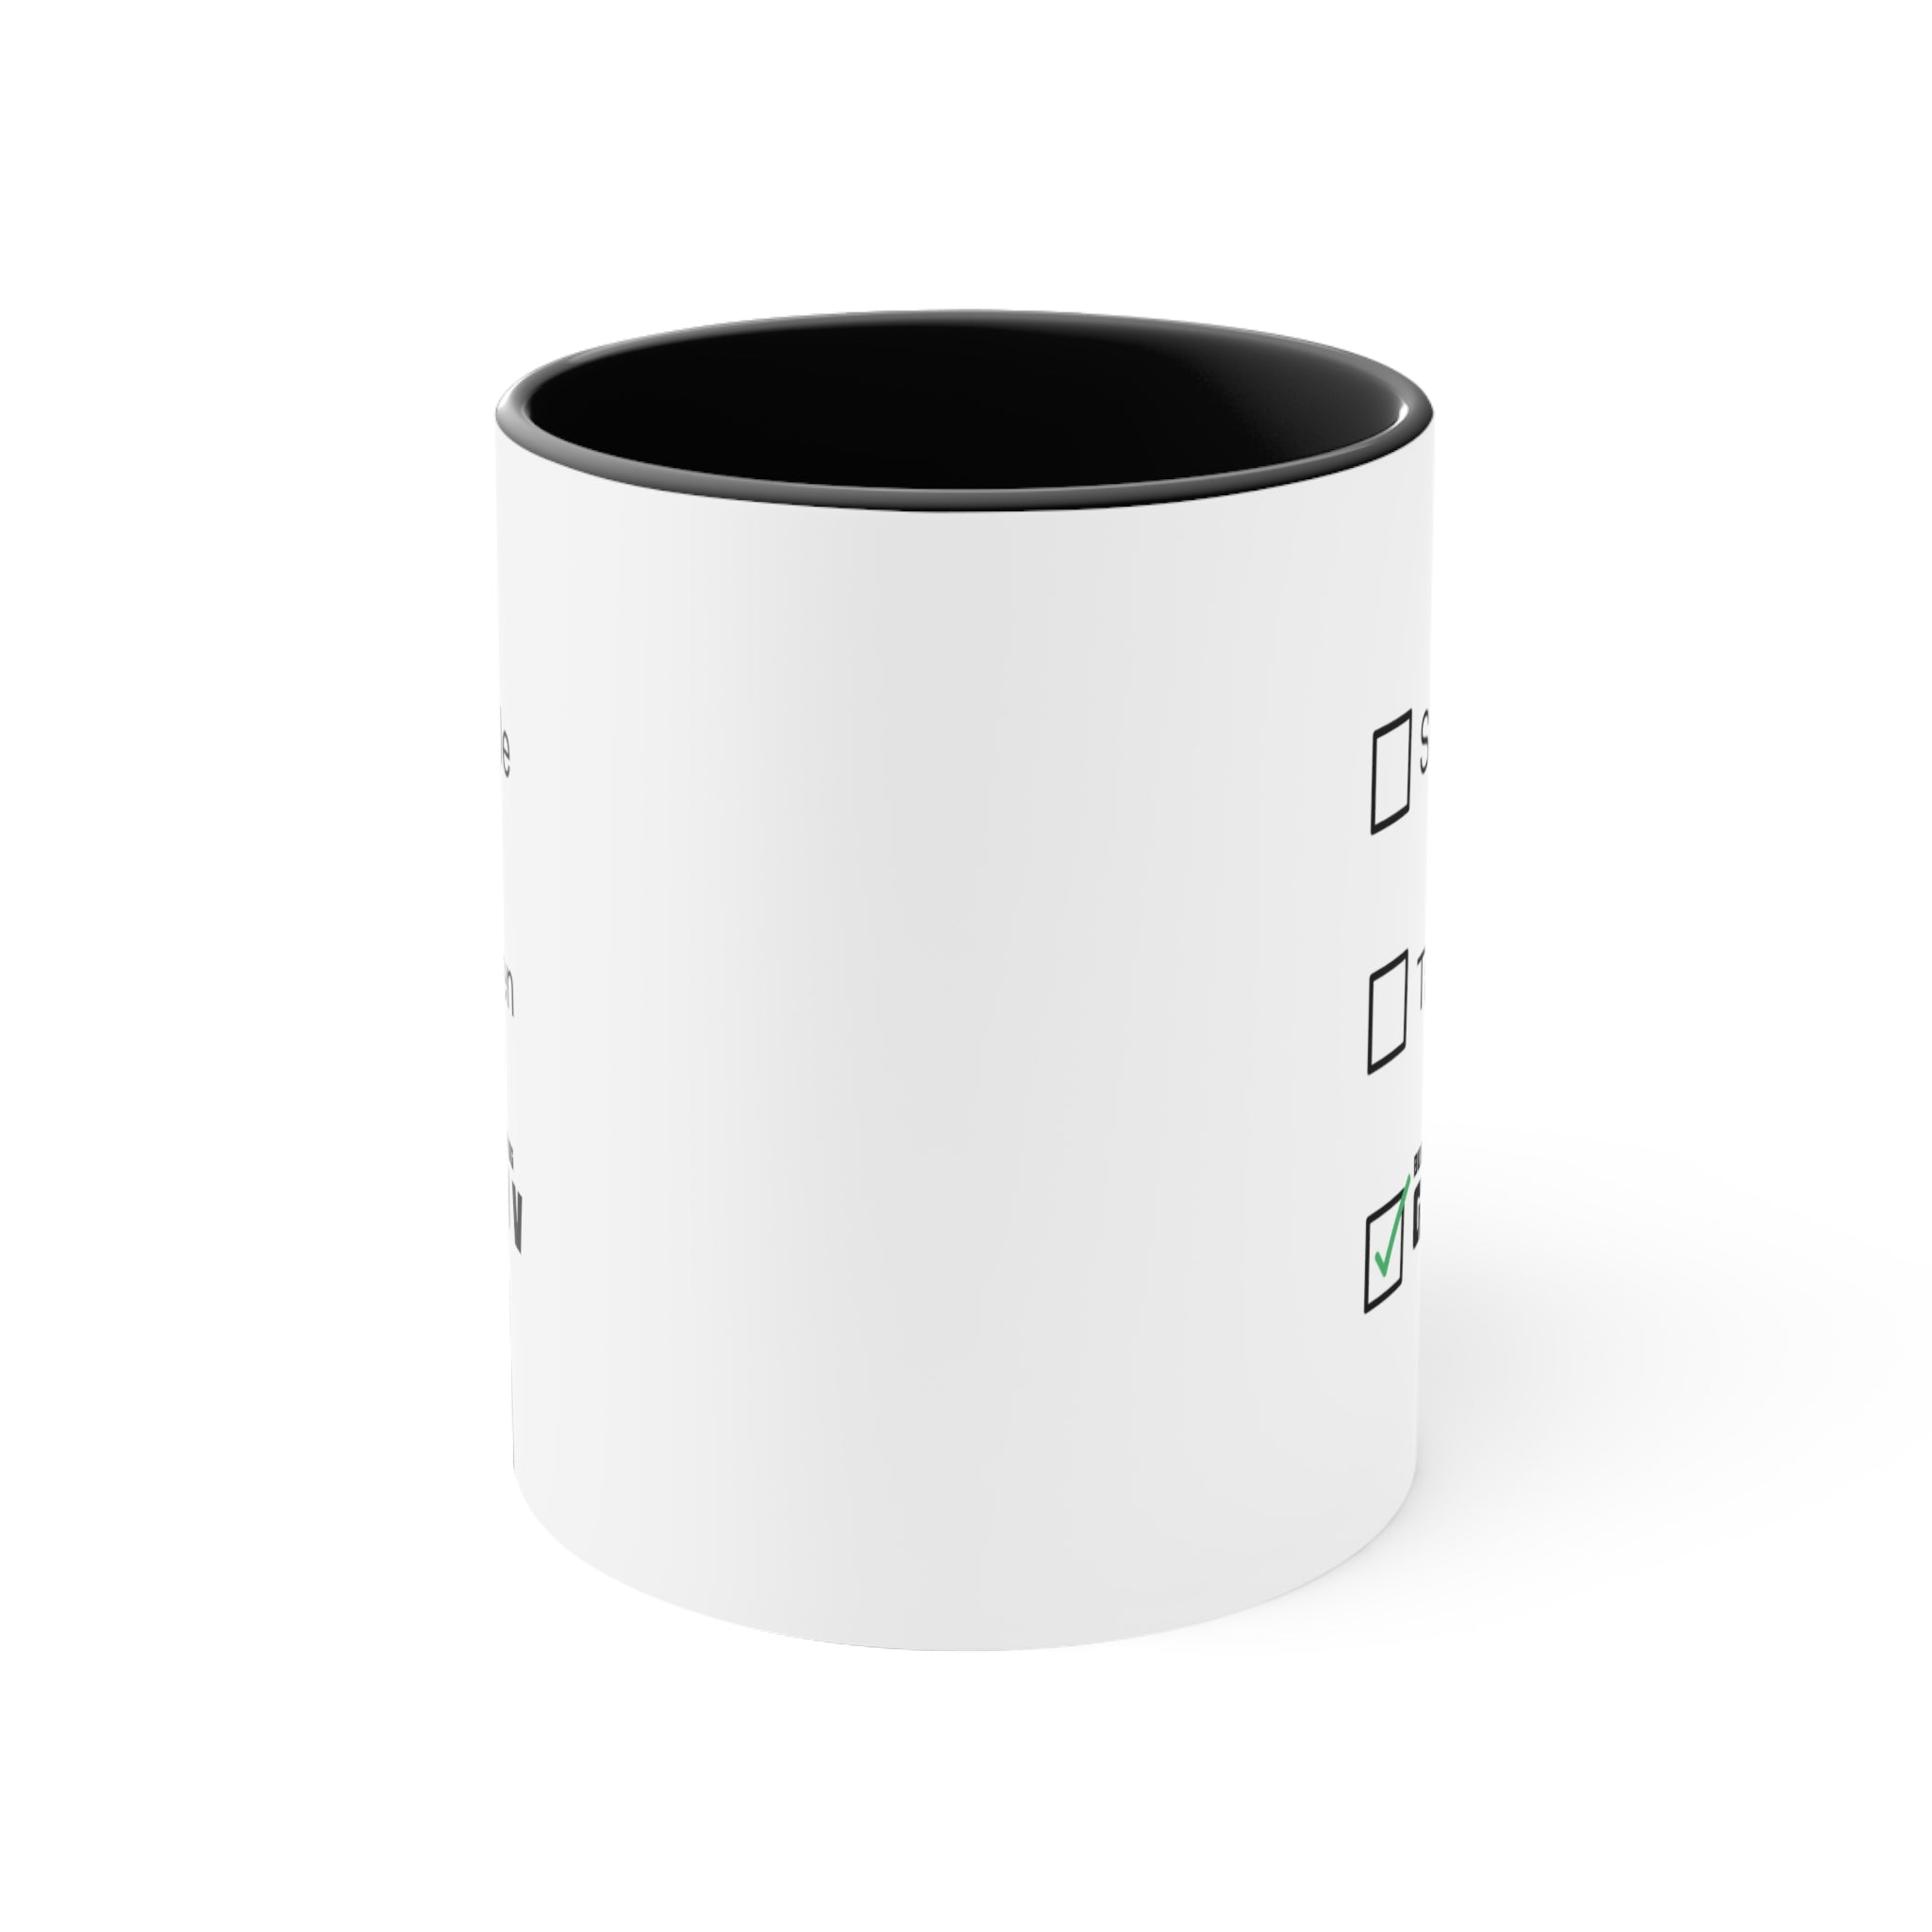 GTA 5 Taken Single Coffee Mug, 11oz Funny Cup Gift For Him Gift For Her Birthday Christmas Valentin Mug